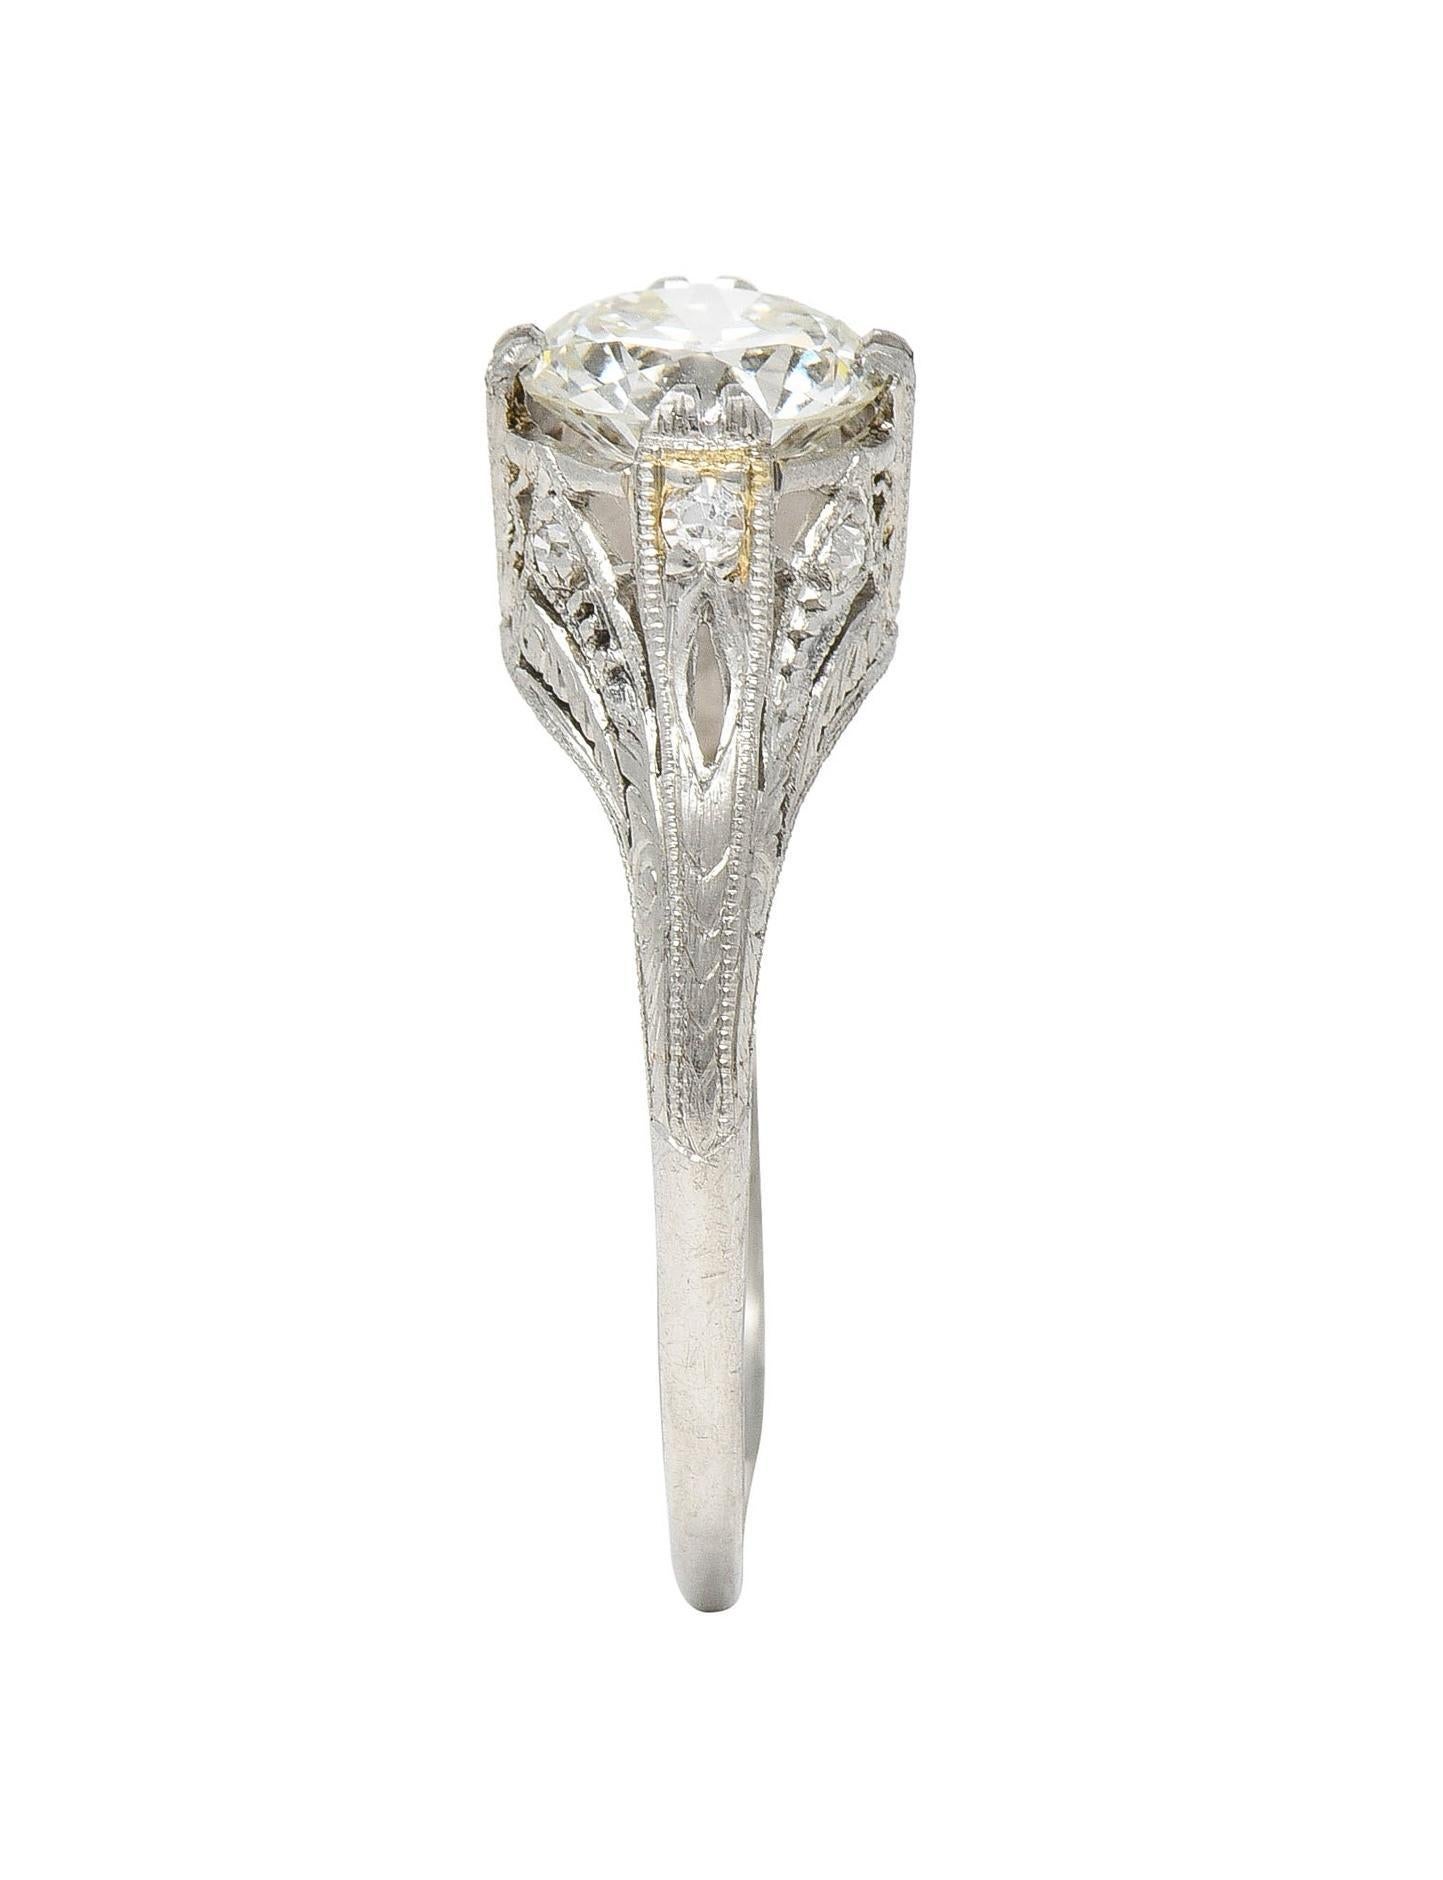 Art Deco 1.26 CTW Old European Cut Diamond Platinum Vintage Engagement Ring For Sale 5